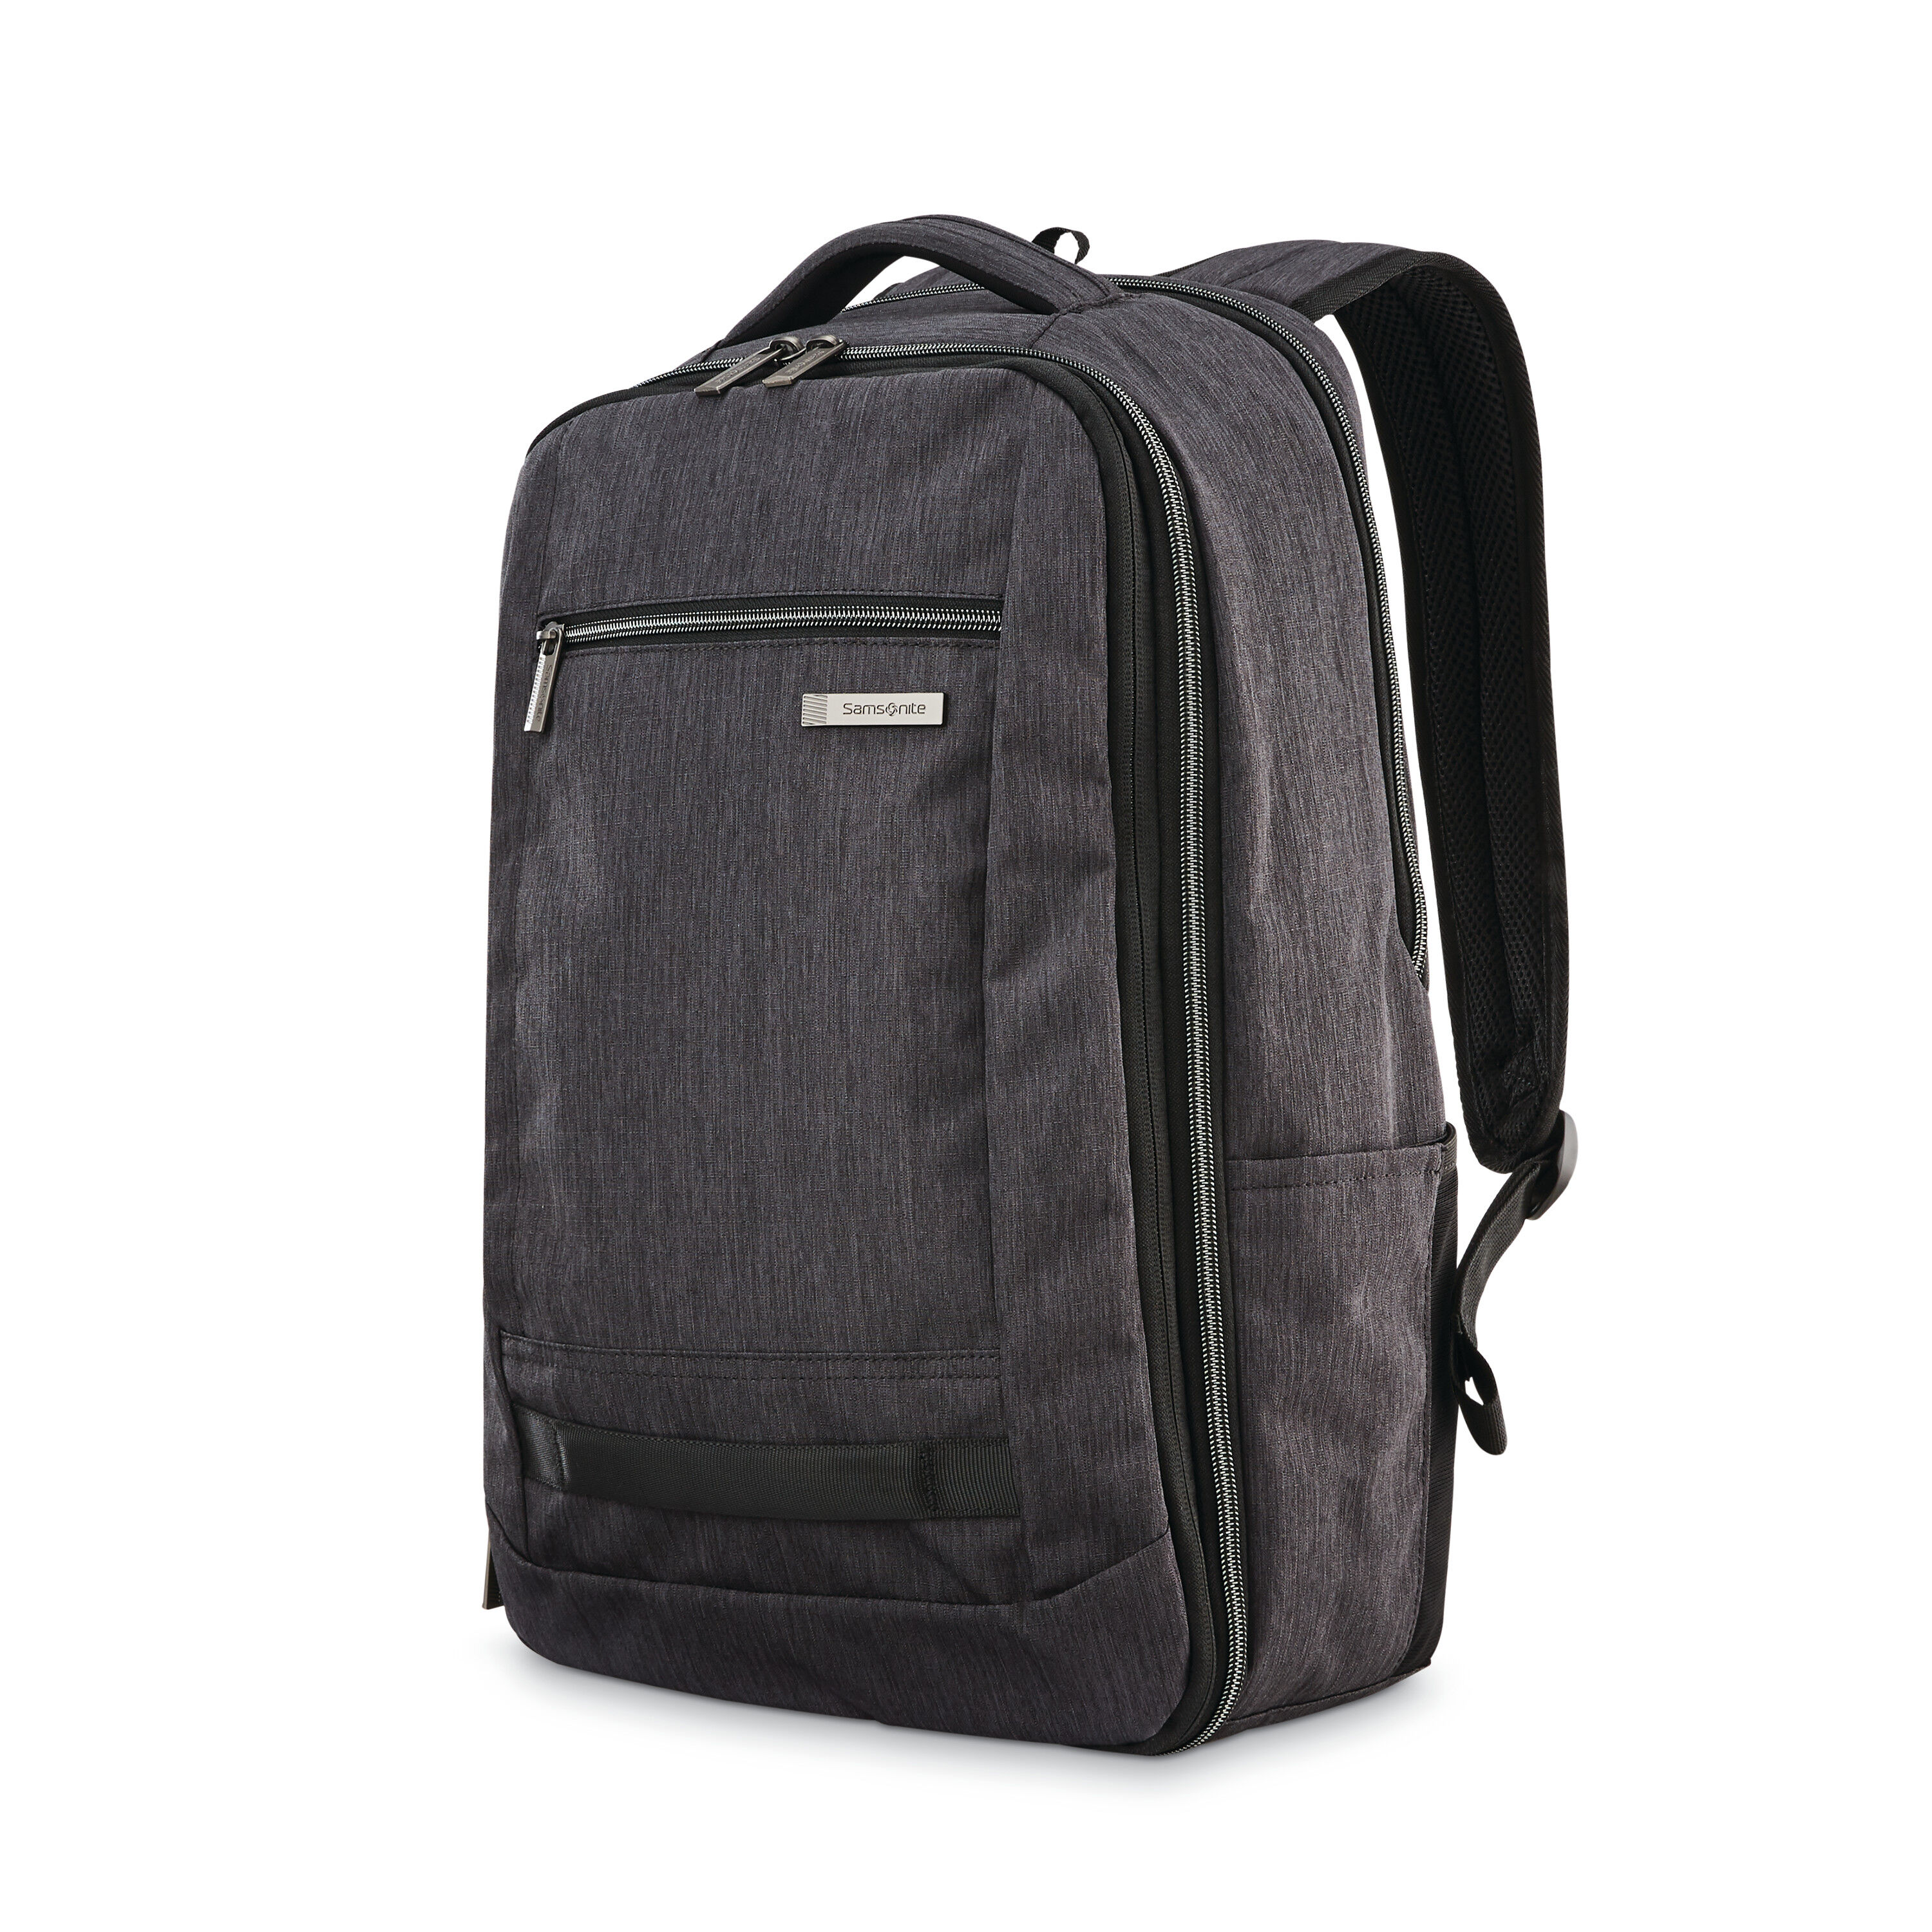 Buy Modern Utility Travel Backpack for USD 111.99 | Samsonite US